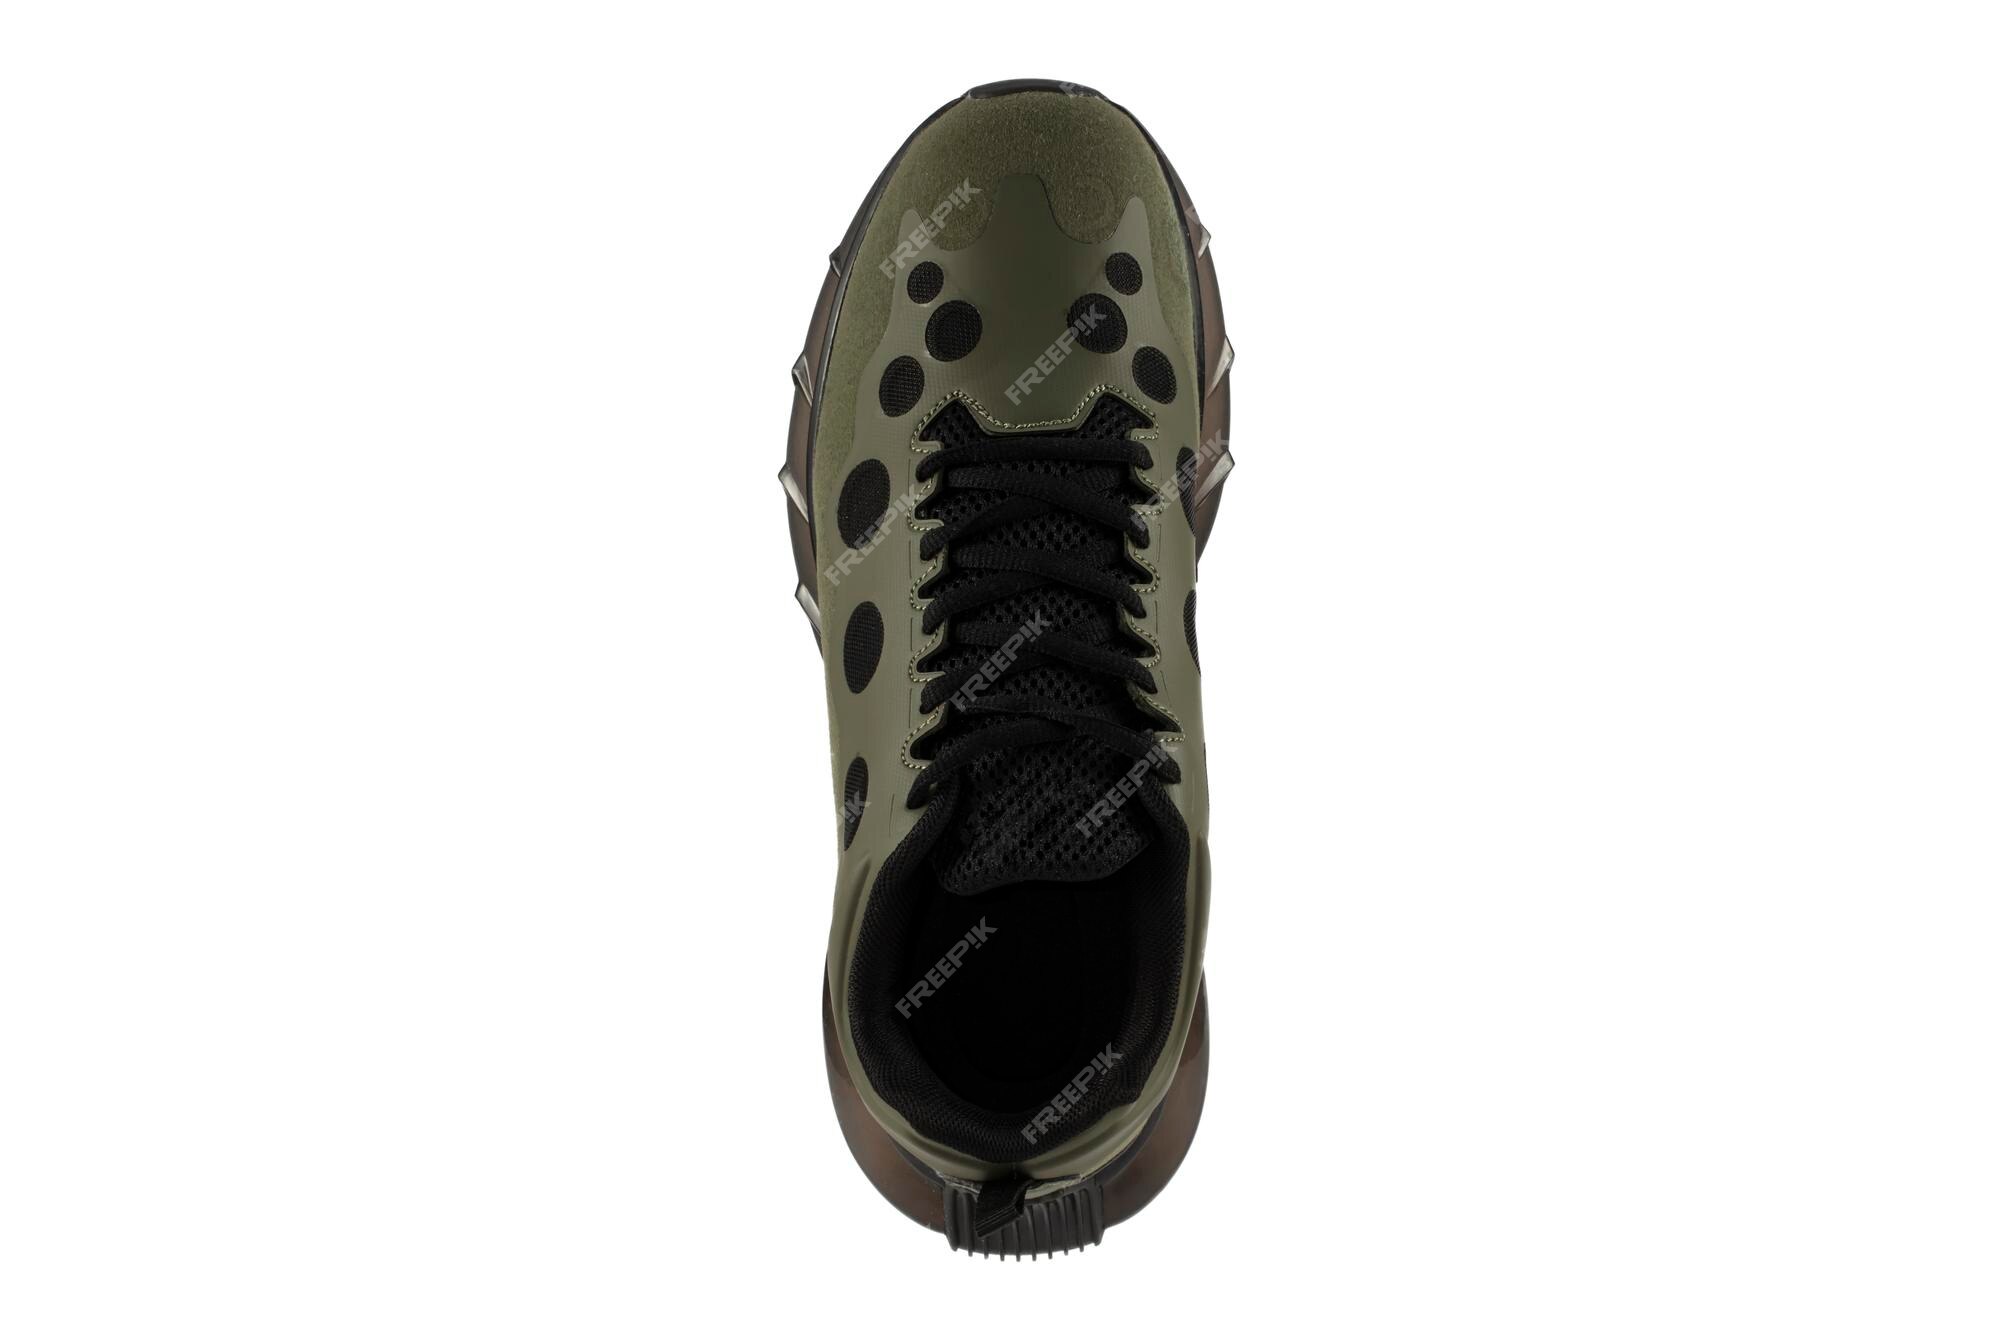 Zapatillas de hombre de color verde oscuro con inserciones aisladas en blanco | Foto Premium